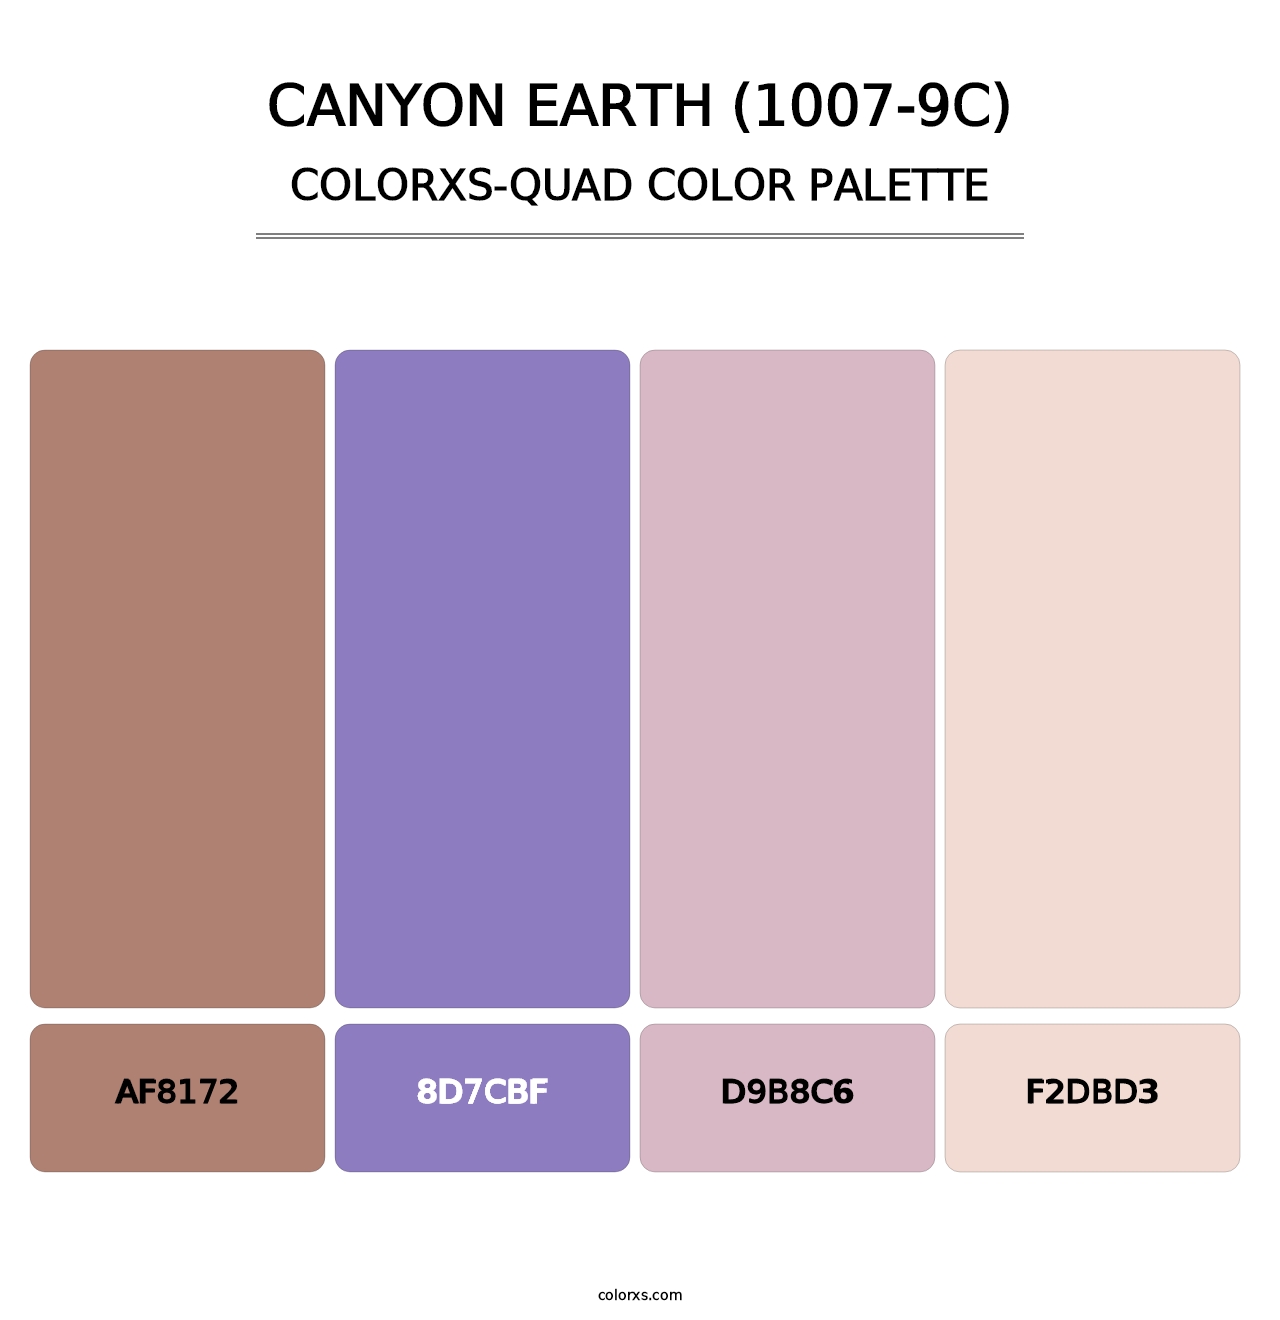 Canyon Earth (1007-9C) - Colorxs Quad Palette